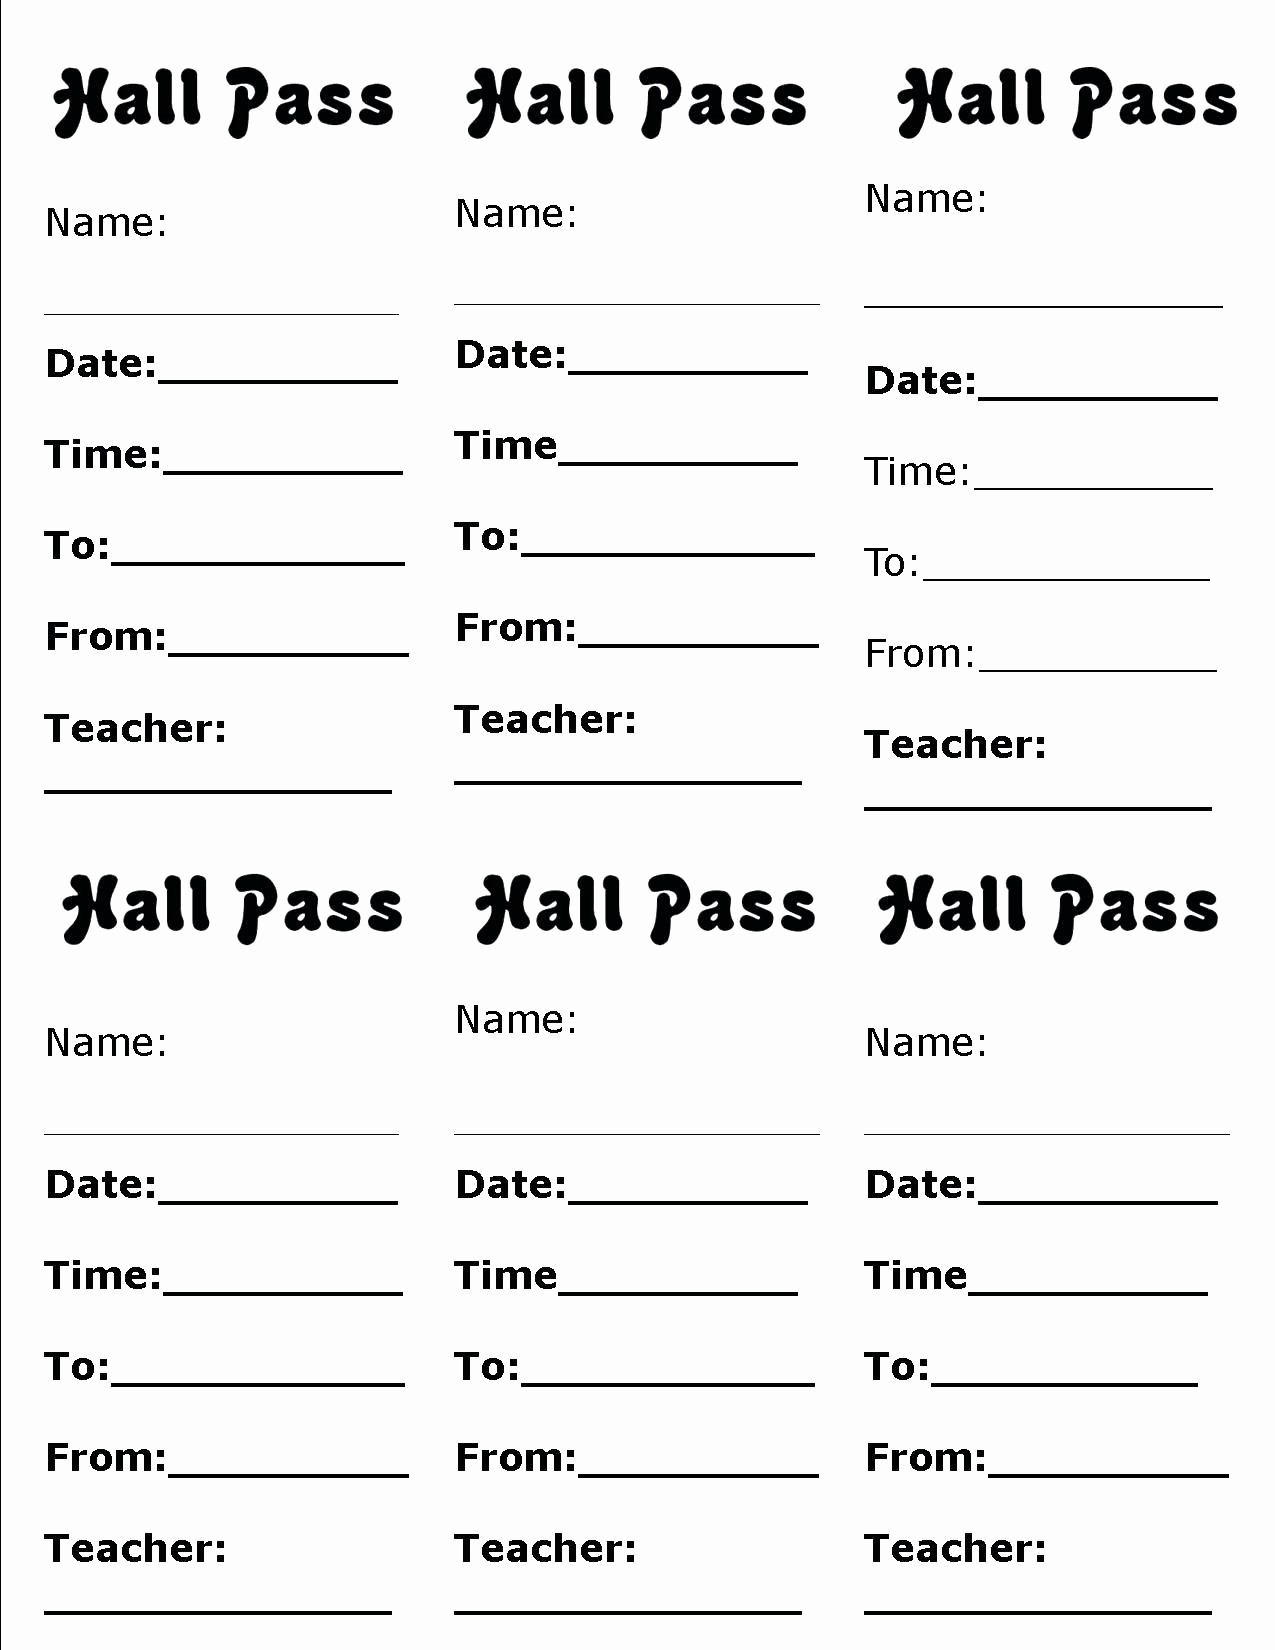 Free Printable Hall Pass Template Printable Templates